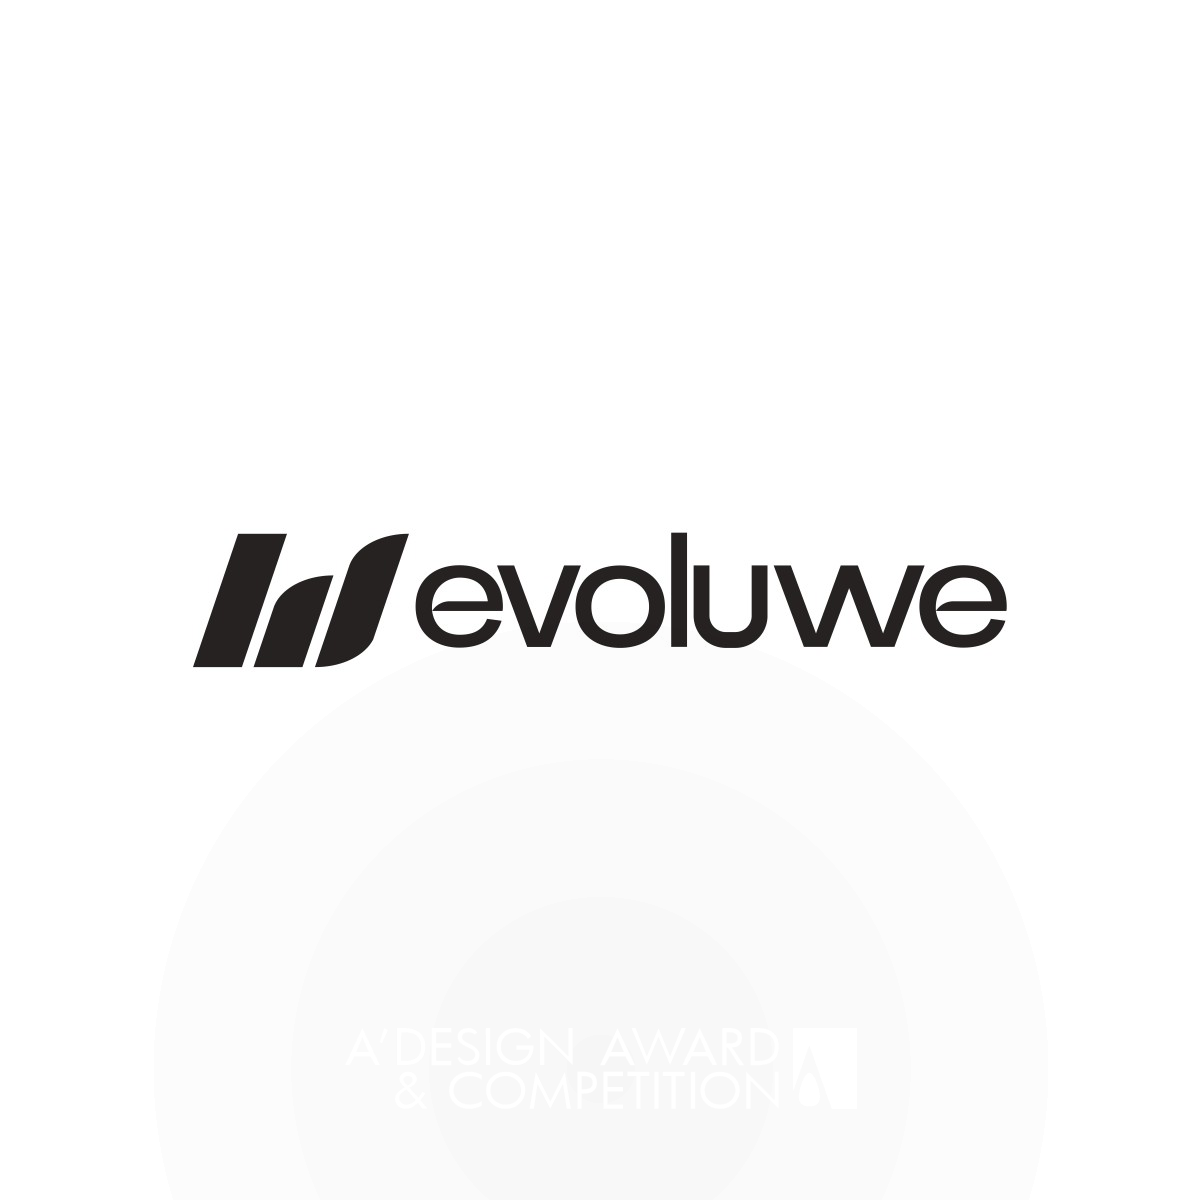 Evoluwe : Une Marque de Consultance Axée sur l'Évolution